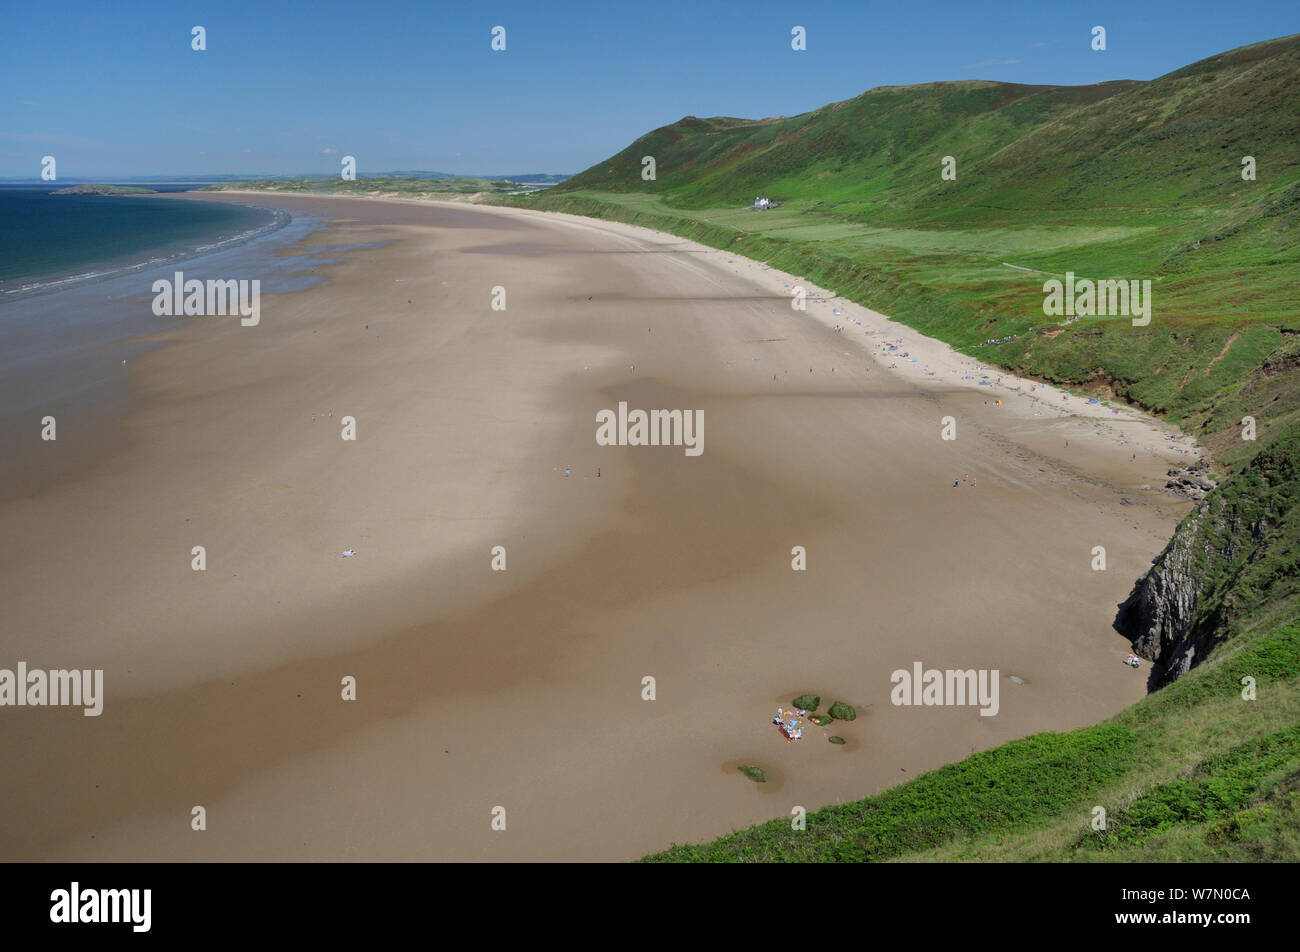 Panoramica di Rhossili Bay a bassa marea con molte persone rilassante sulla spiaggia sabbiosa enorme sotto Rhossili giù, la Penisola di Gower, Wales, Regno Unito, Luglio. Sequenza 1 di 2, vista corrispondente con differenti maree Foto Stock